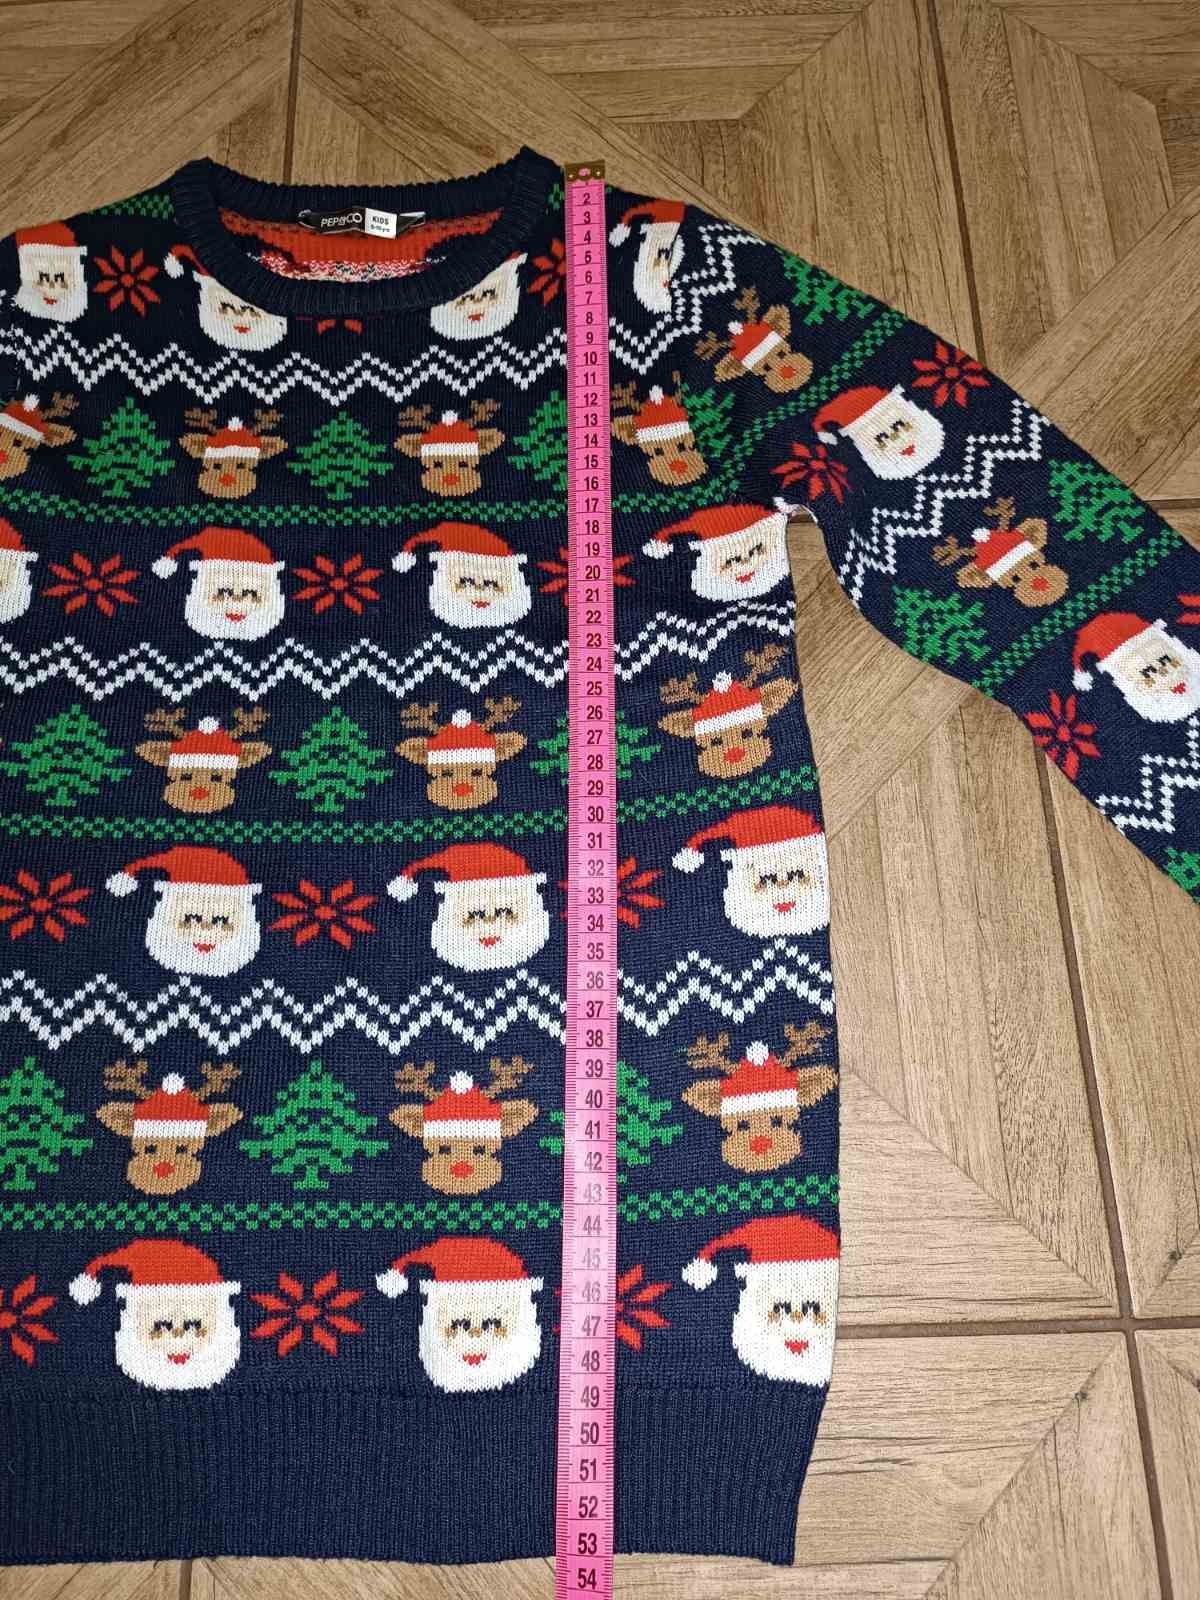 Фирменный свитер на 6-7 лет